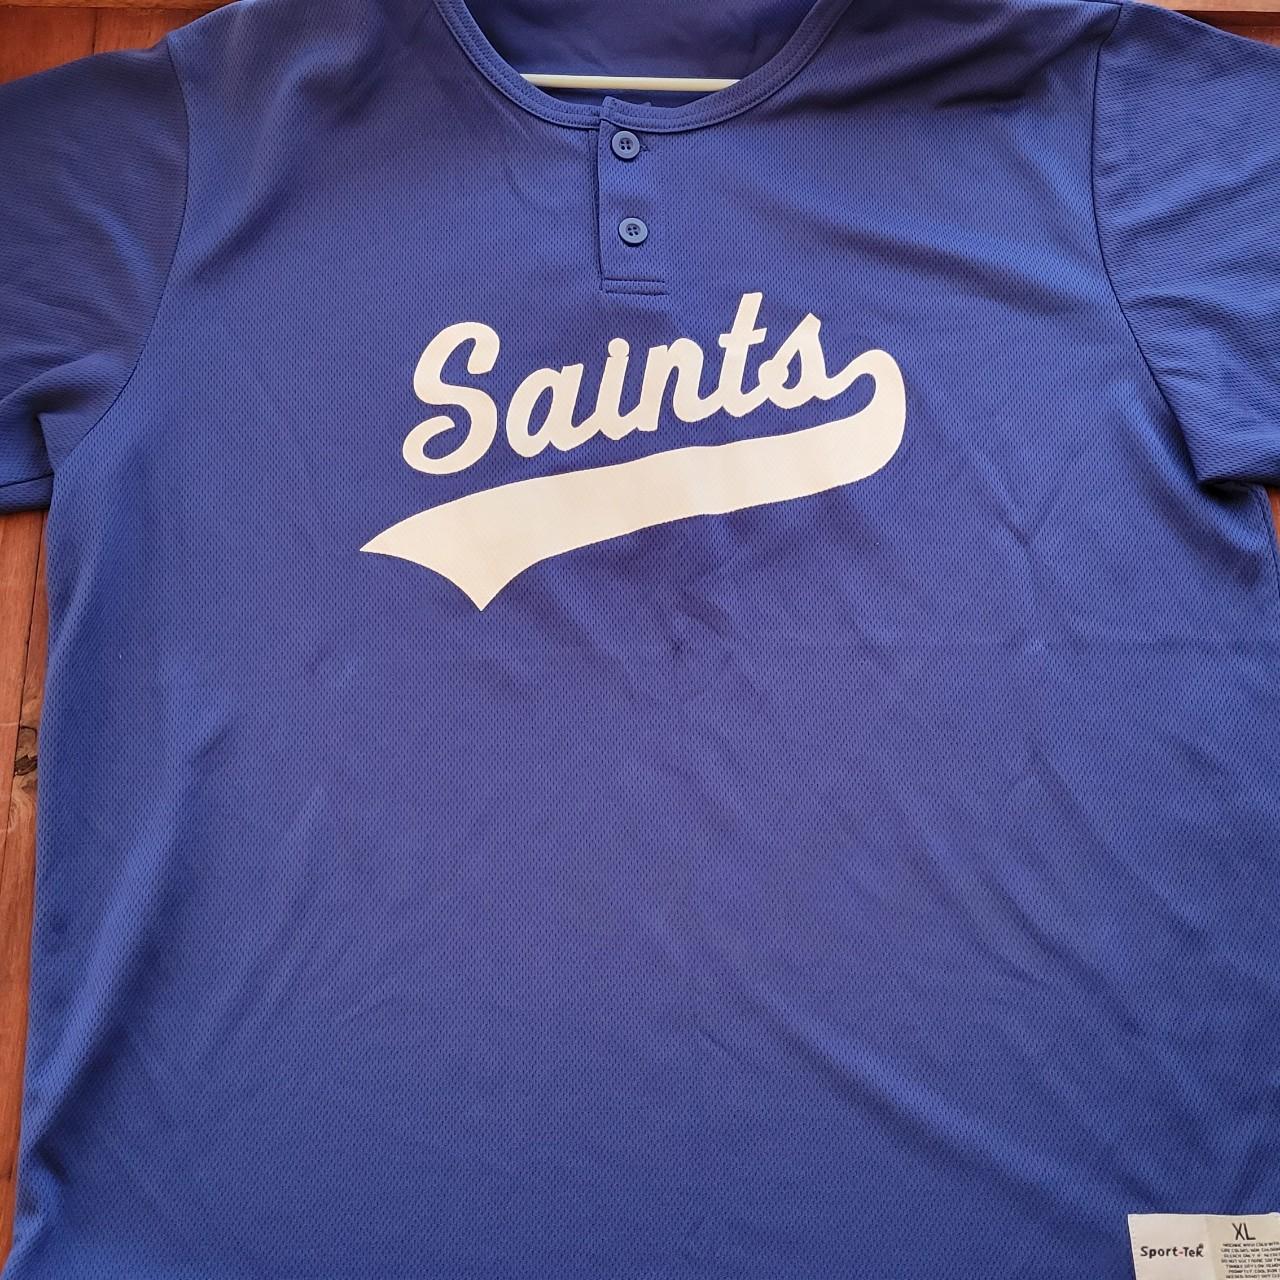 st paul saints jerseys